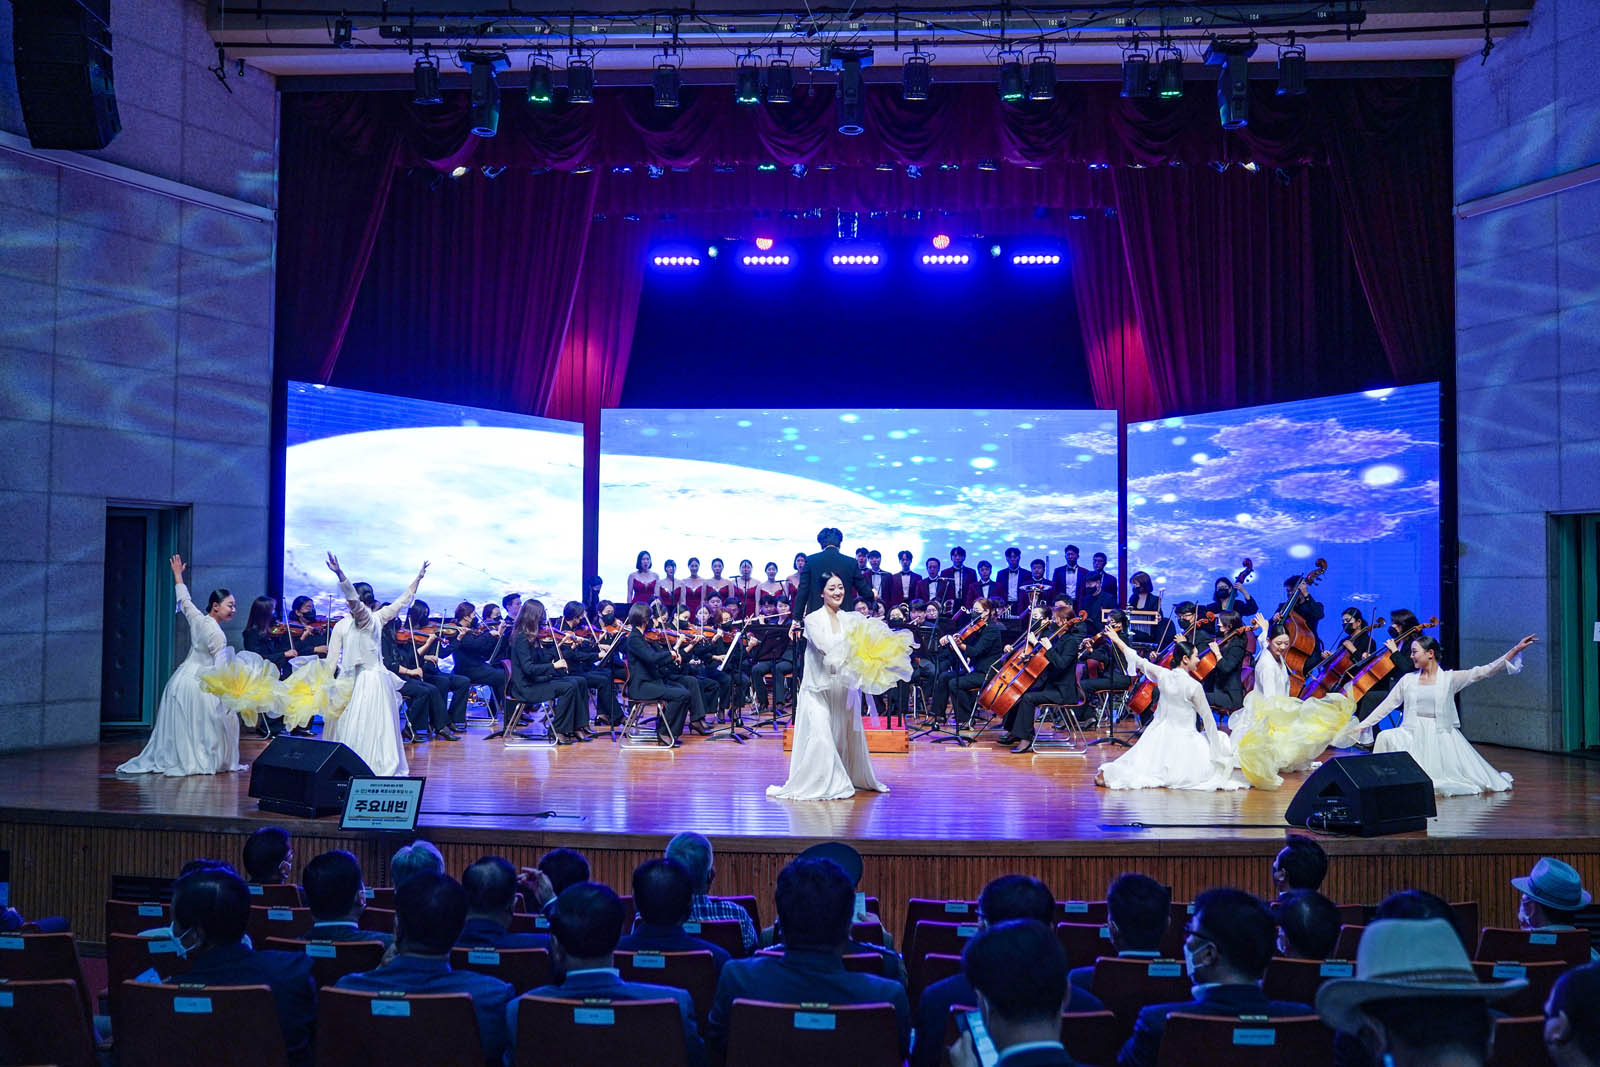 (07.01.문화예술회관) 취임식전 무대공연을 하는 모습으로 하얀 드레스를 입은 무용수들이 오케스트라 앞에서 공연을 하고 있다